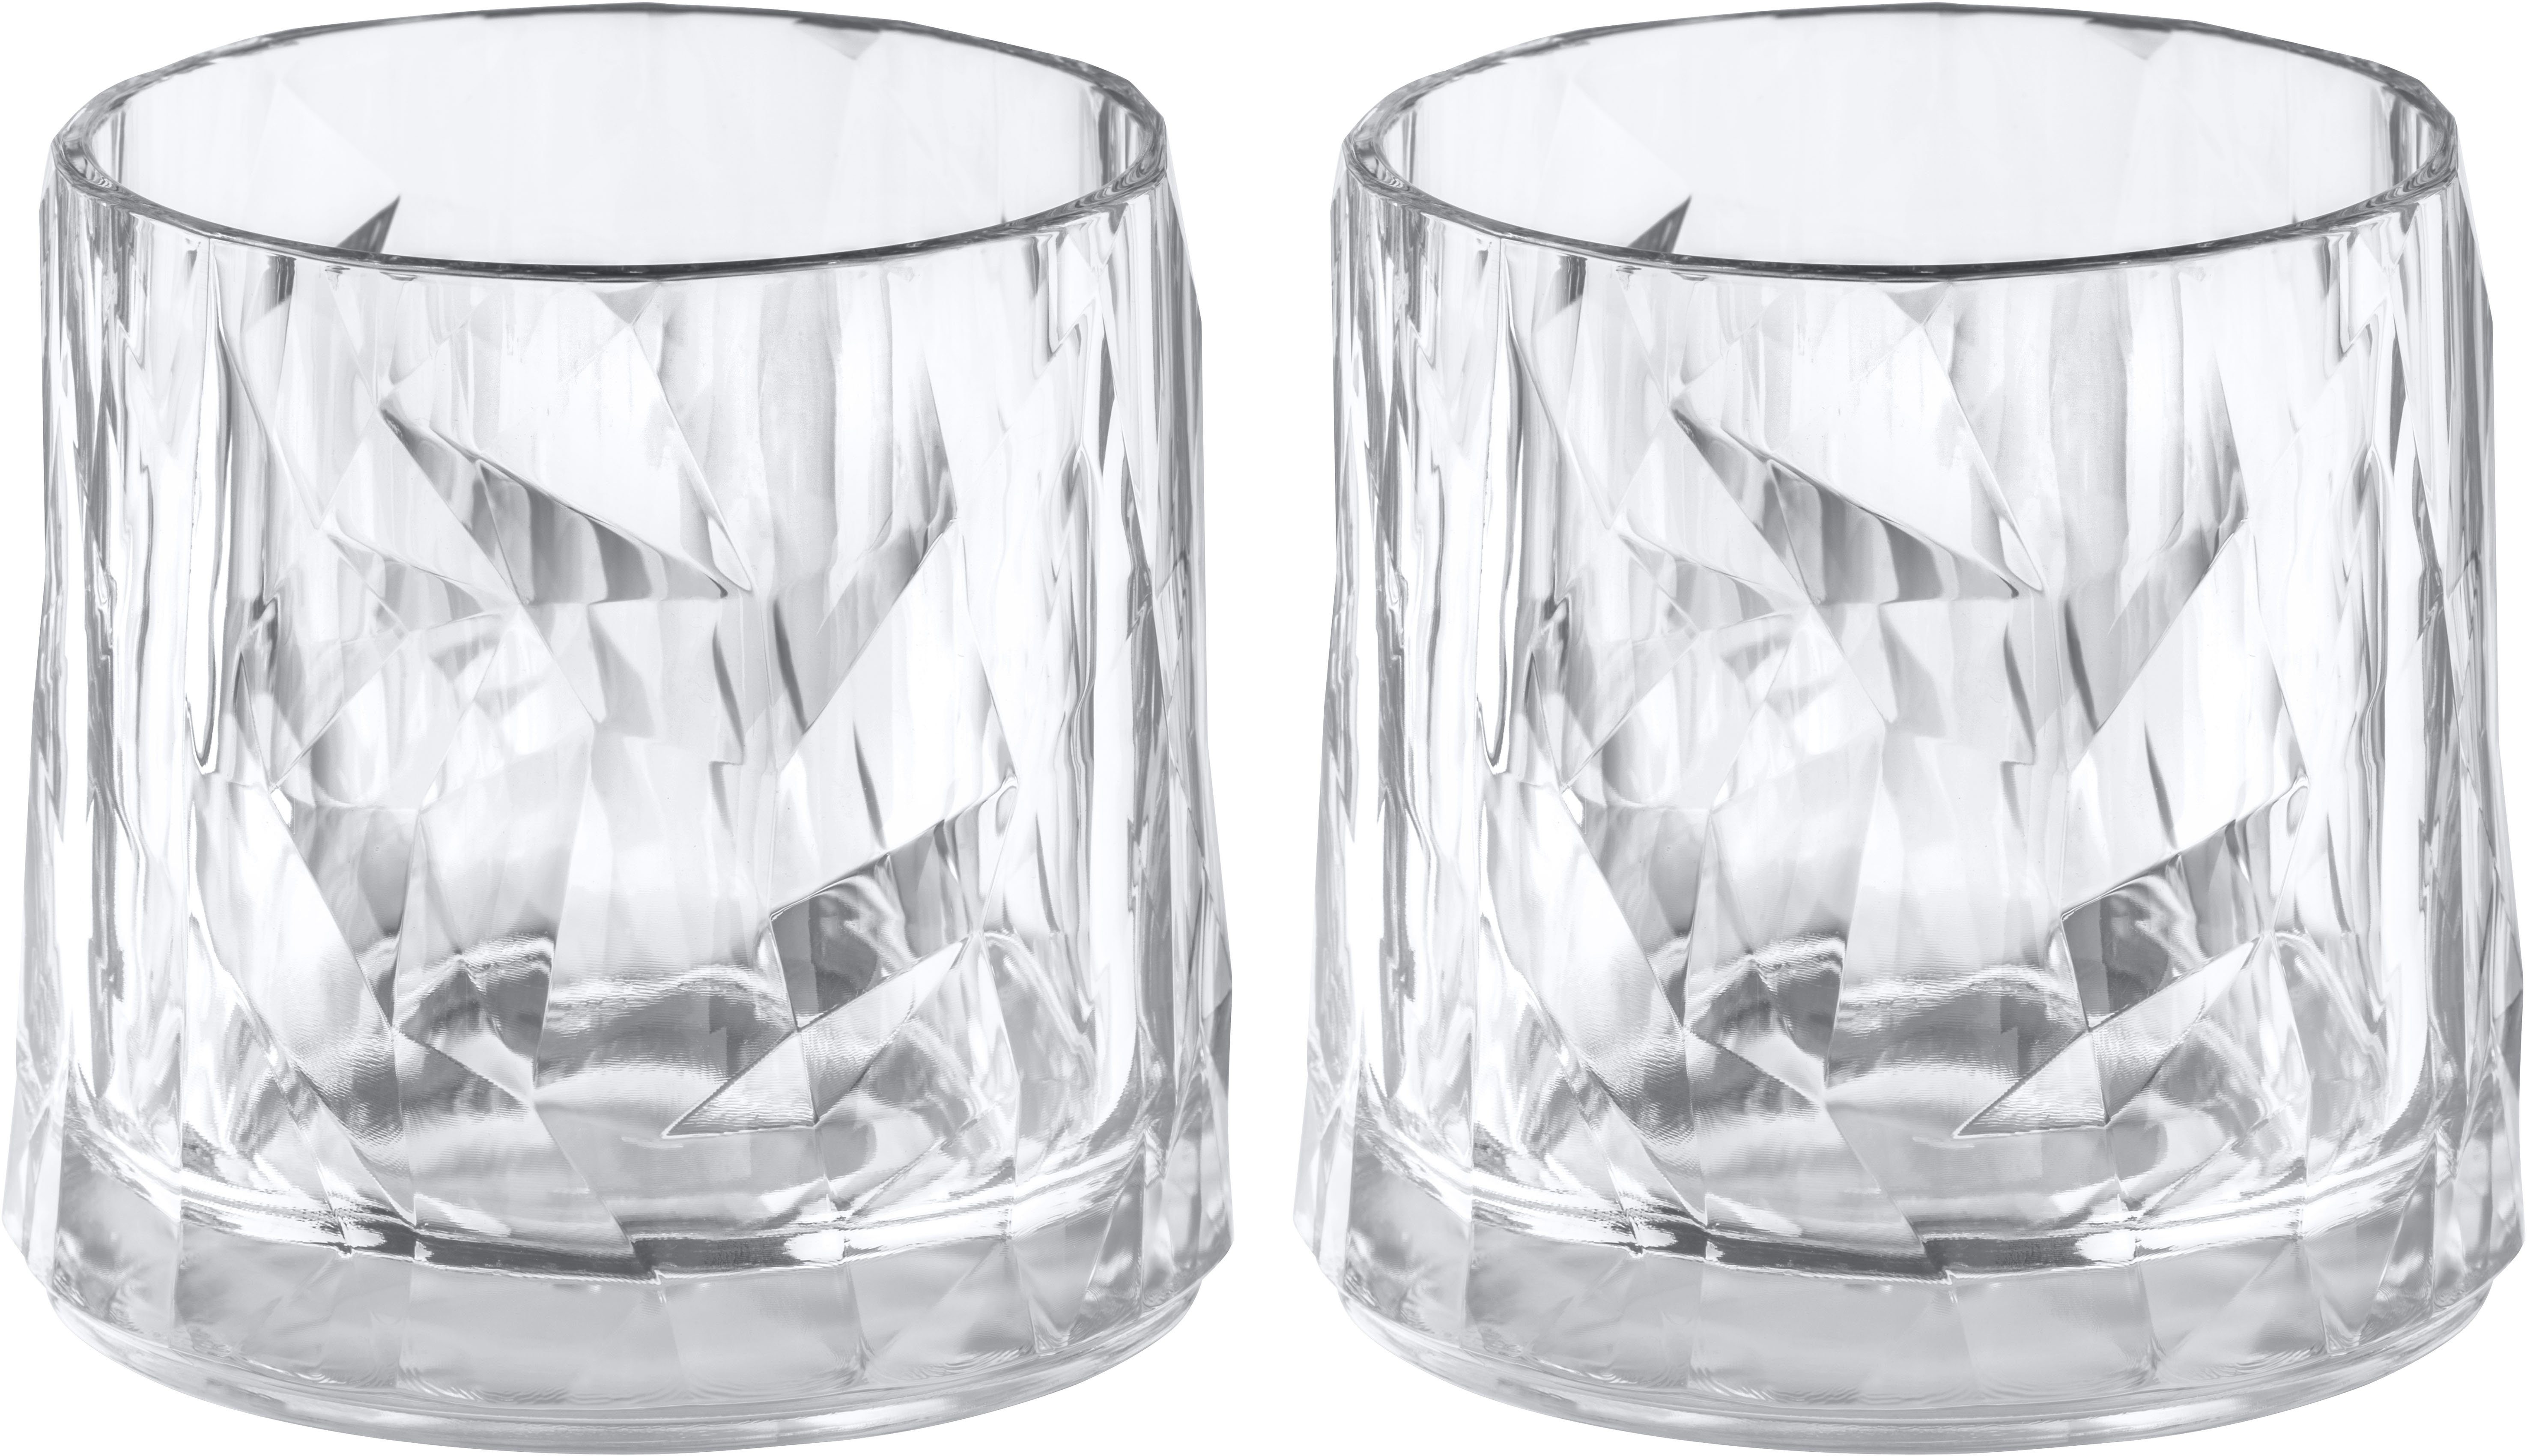 KOZIOL Whiskyglas CLUB No. 2, Kunststoff, unzerbrechlich,recycelbar,spülmaschinengeeignet, 250ml